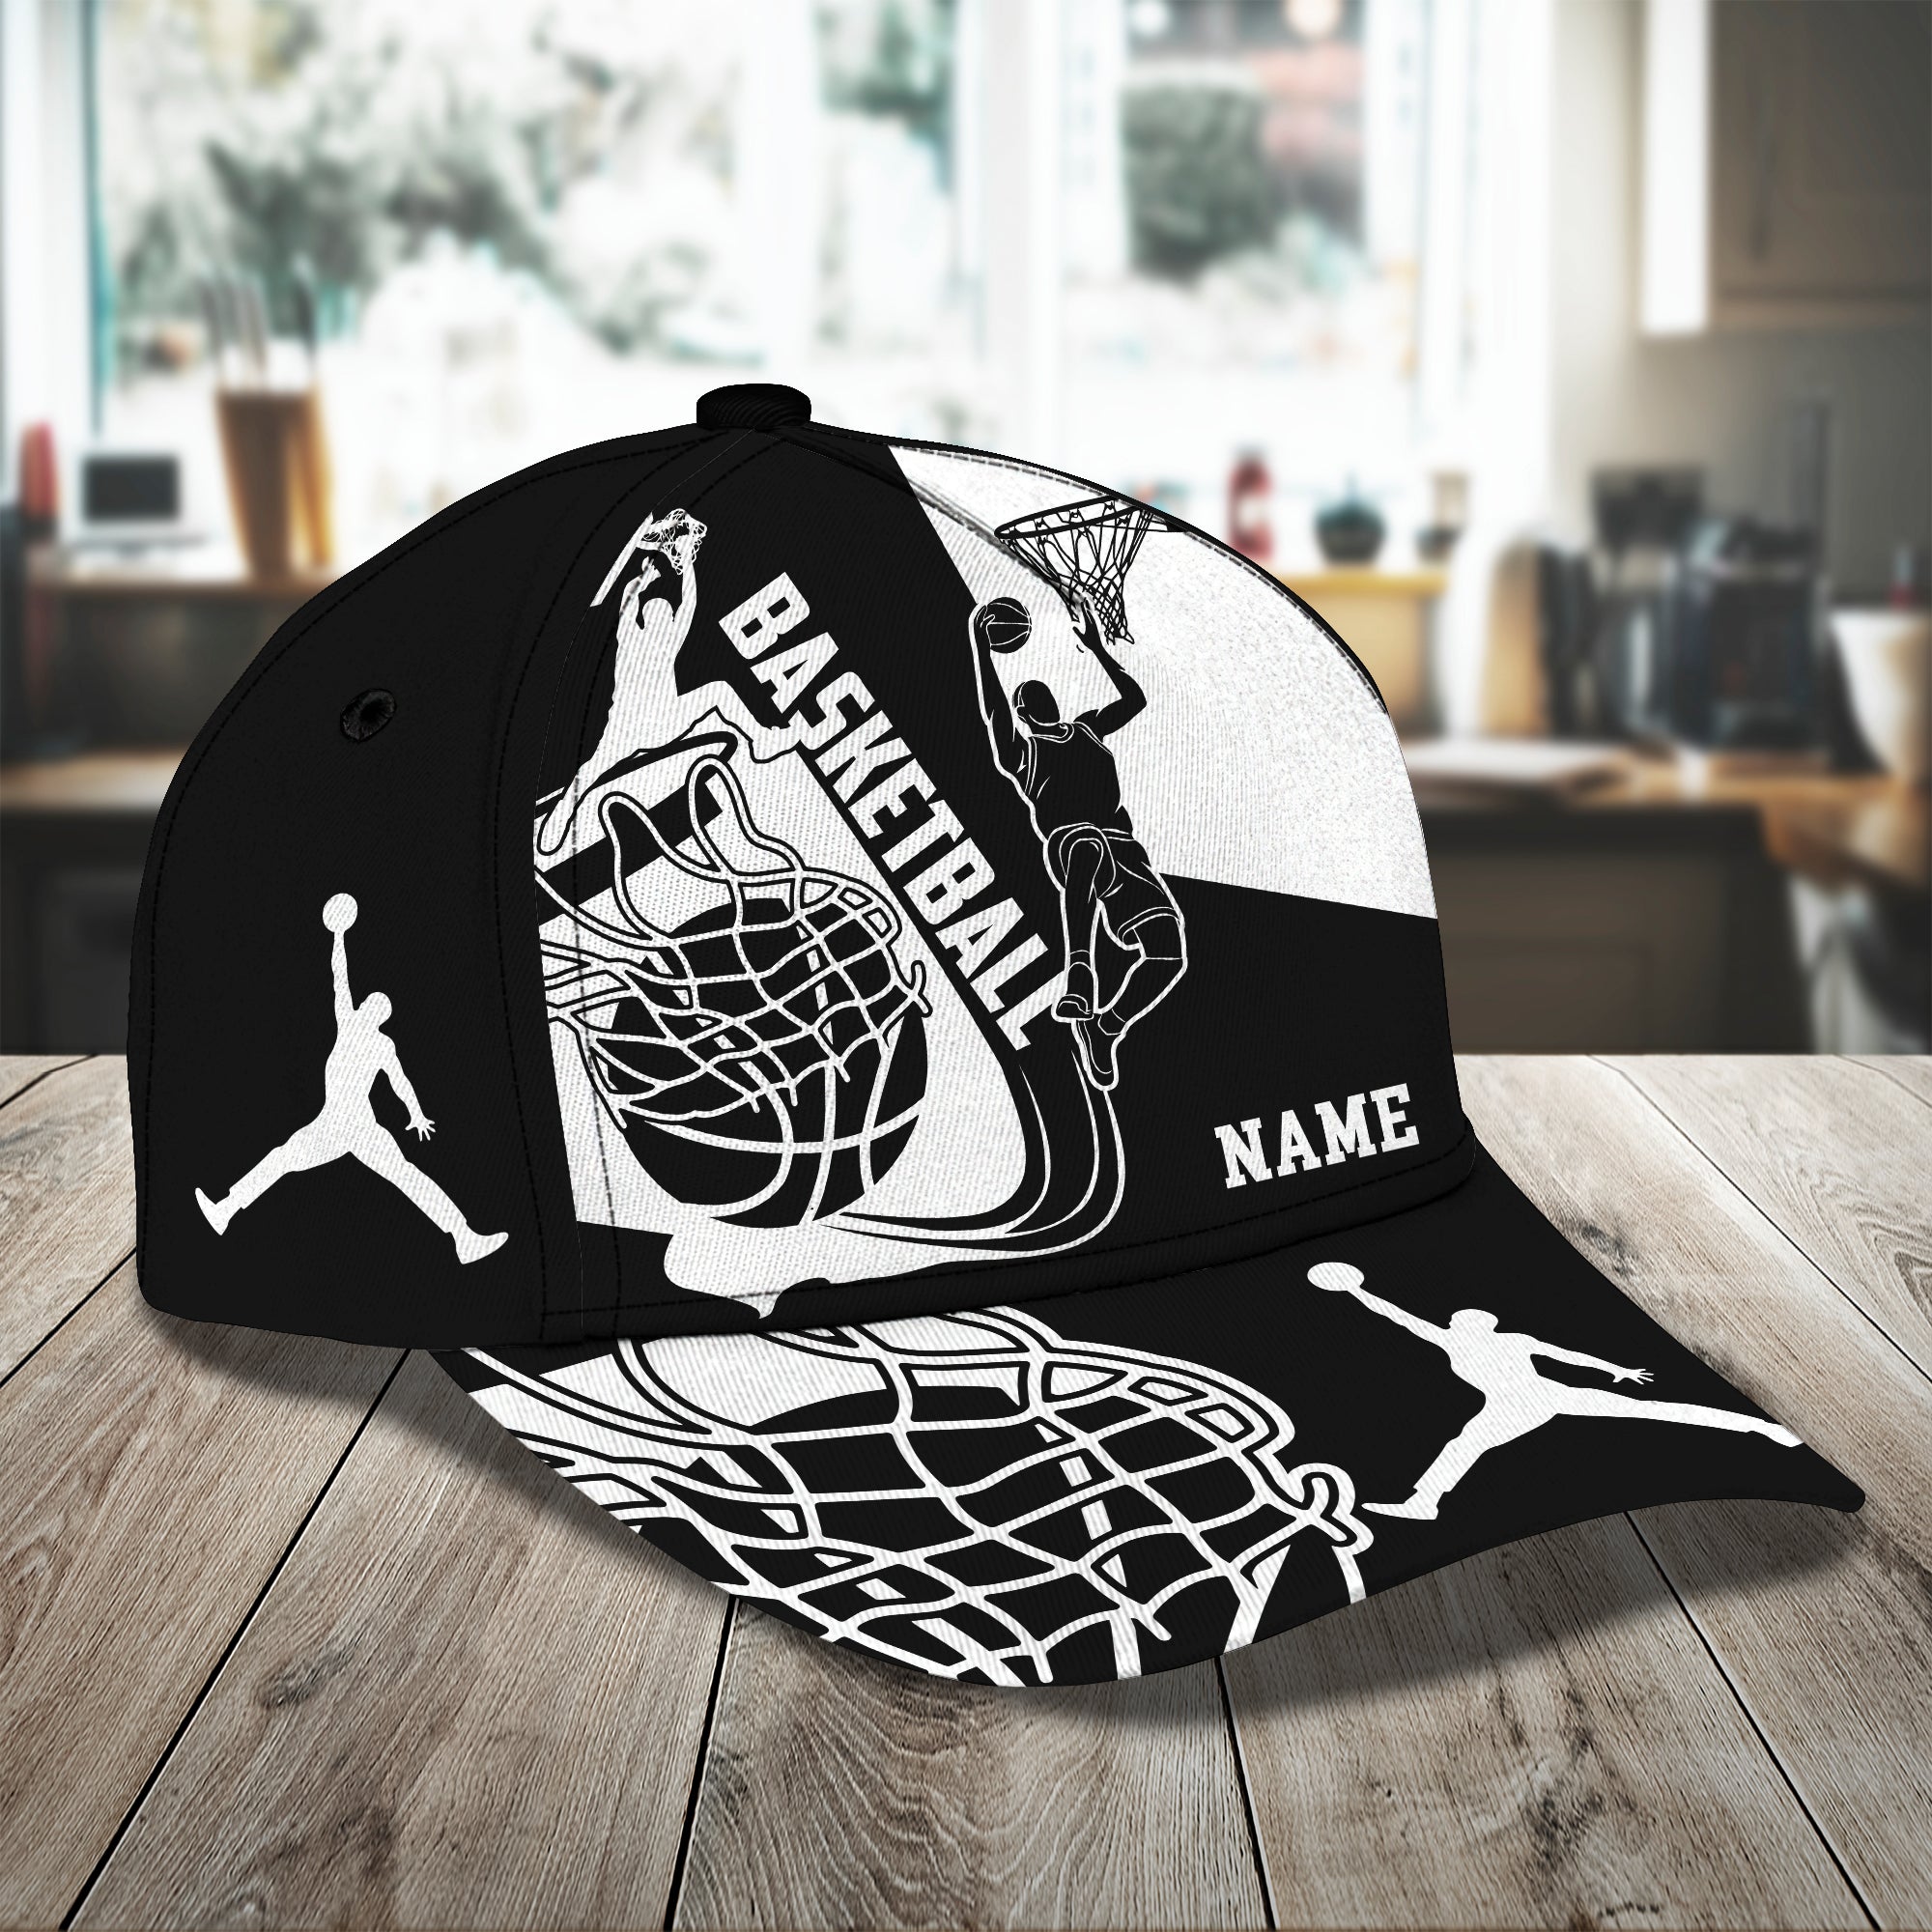 Basketball - Personalized Name Cap -Loop- Hd98 81